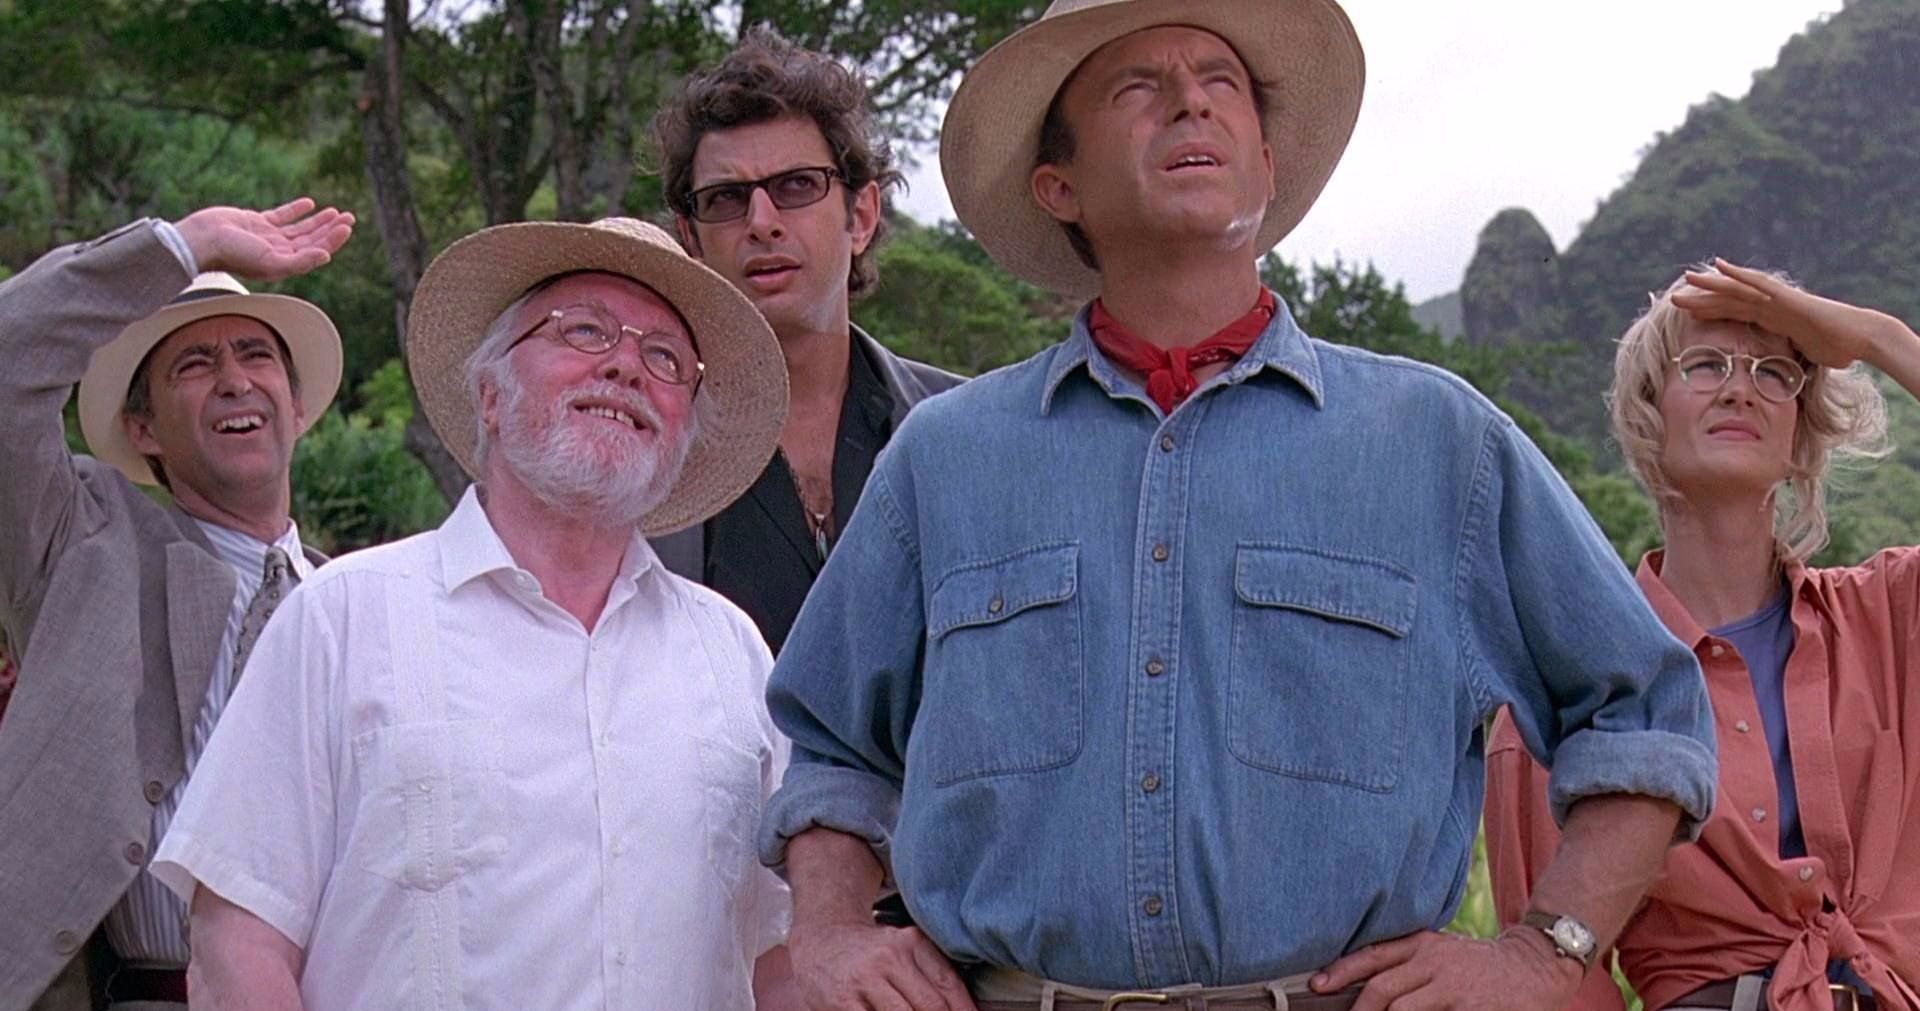 Is Jurassic World 3 Really Bringing Back Original Jurassic Park Cast?